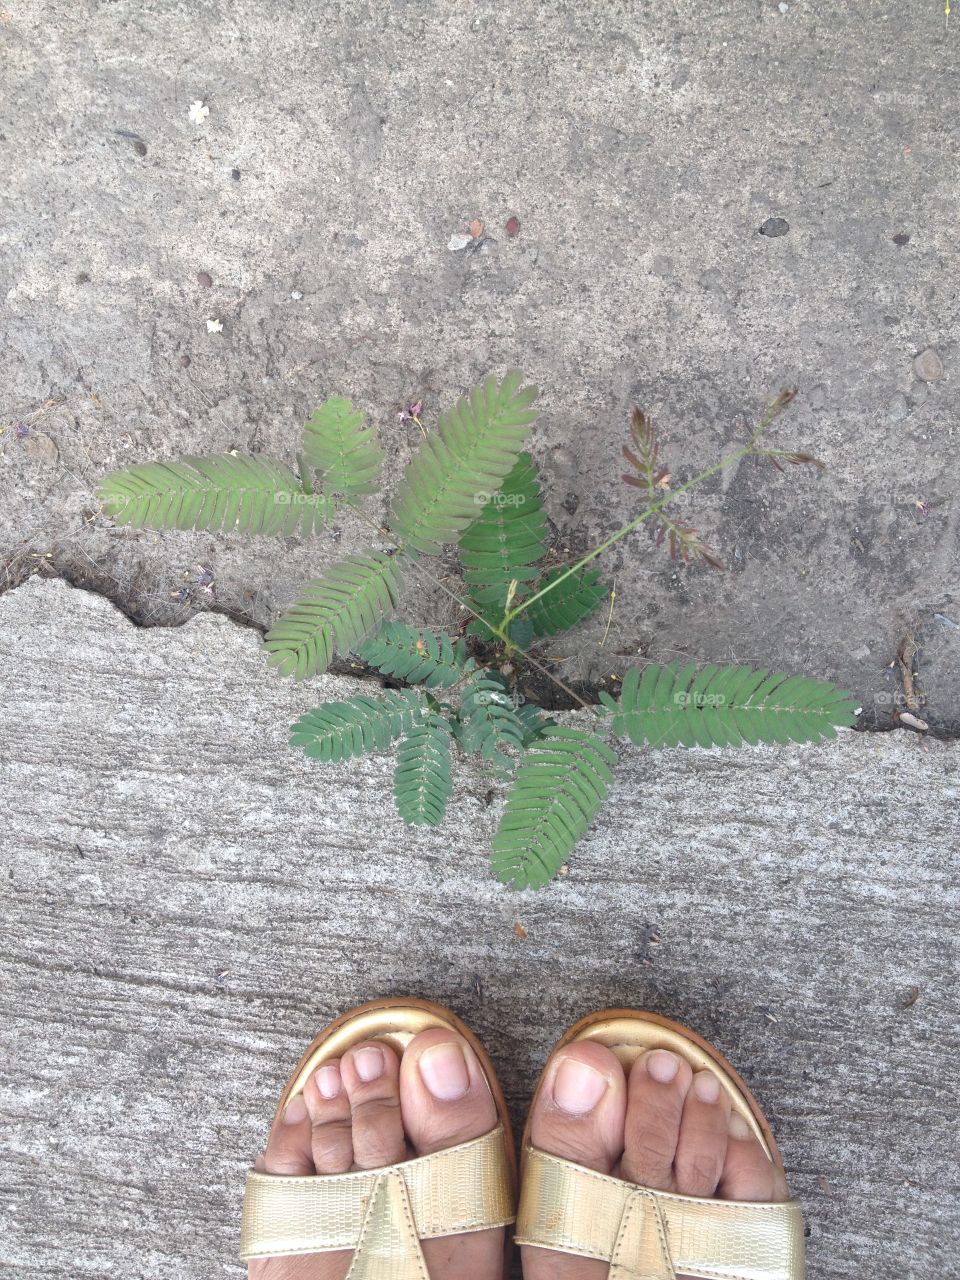 Golden shoes meet survival tree on cocrete floor.